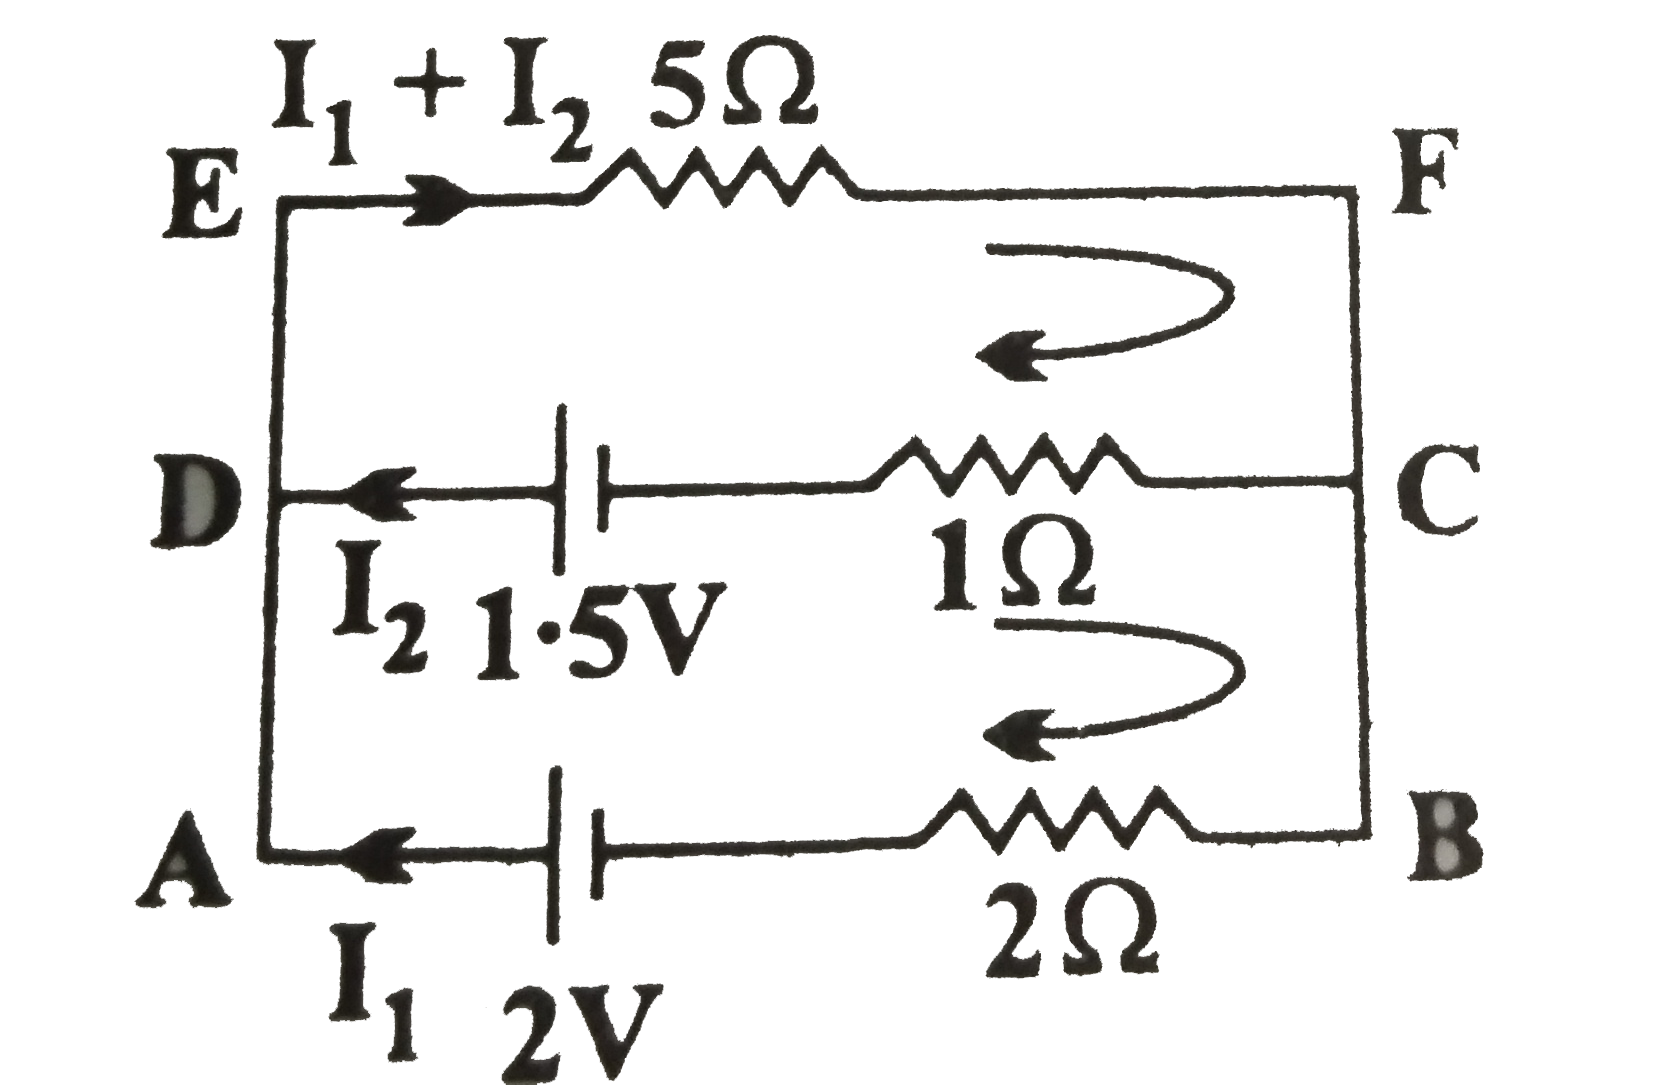 दिये गये चित्र में निम्न की गणना कीजिए-   5 ओम के प्रतिरोध के सिरों के बीच विभवांतर।